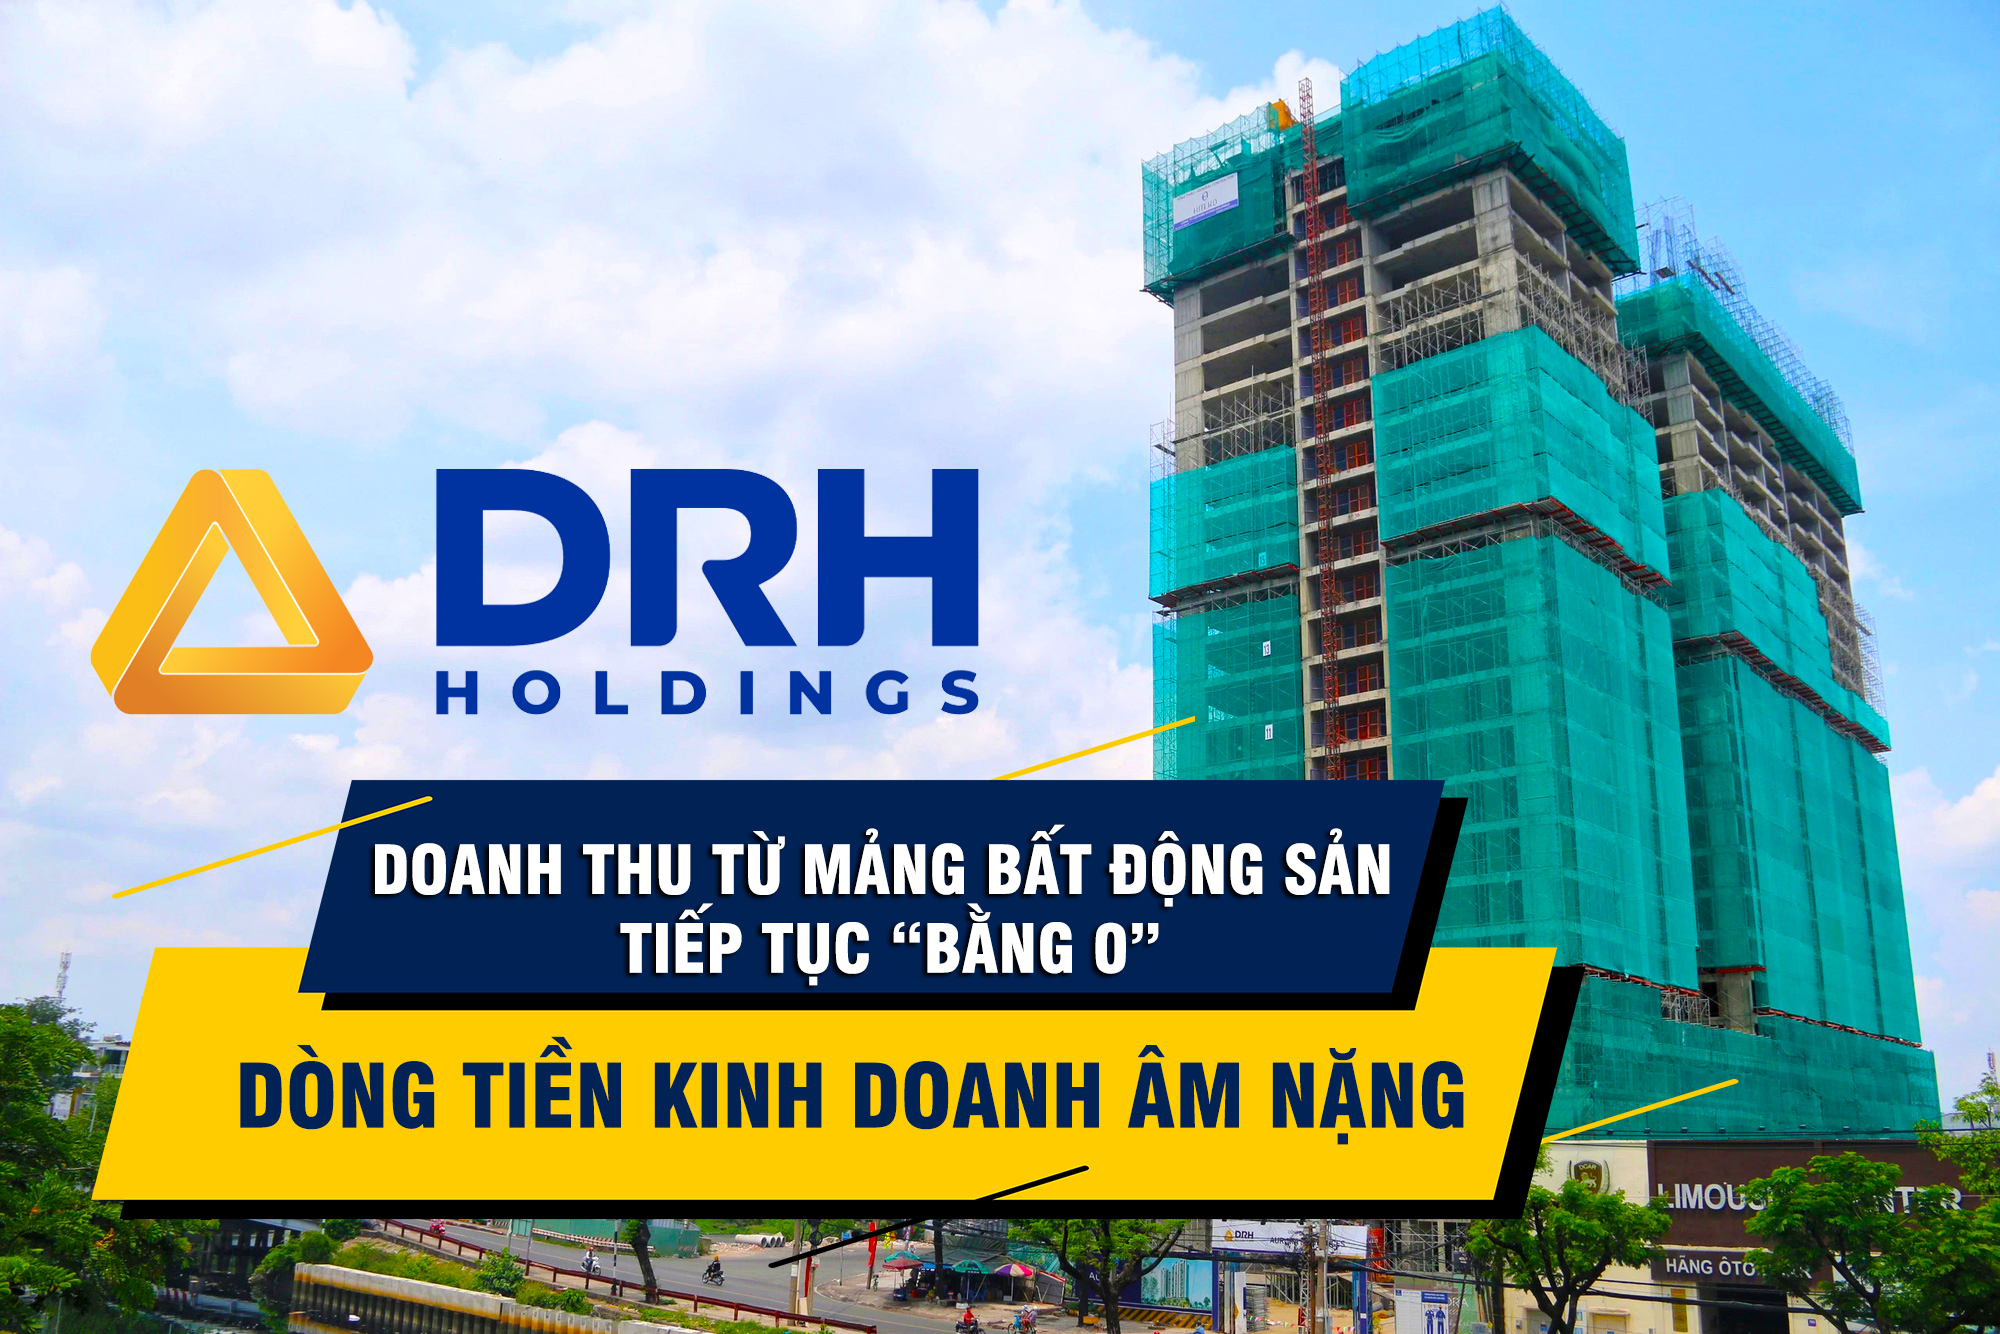 DRH Holdings: Doanh thu từ mảng bất động sản tiếp tục “bằng 0”, dòng tiền kinh doanh âm nặng